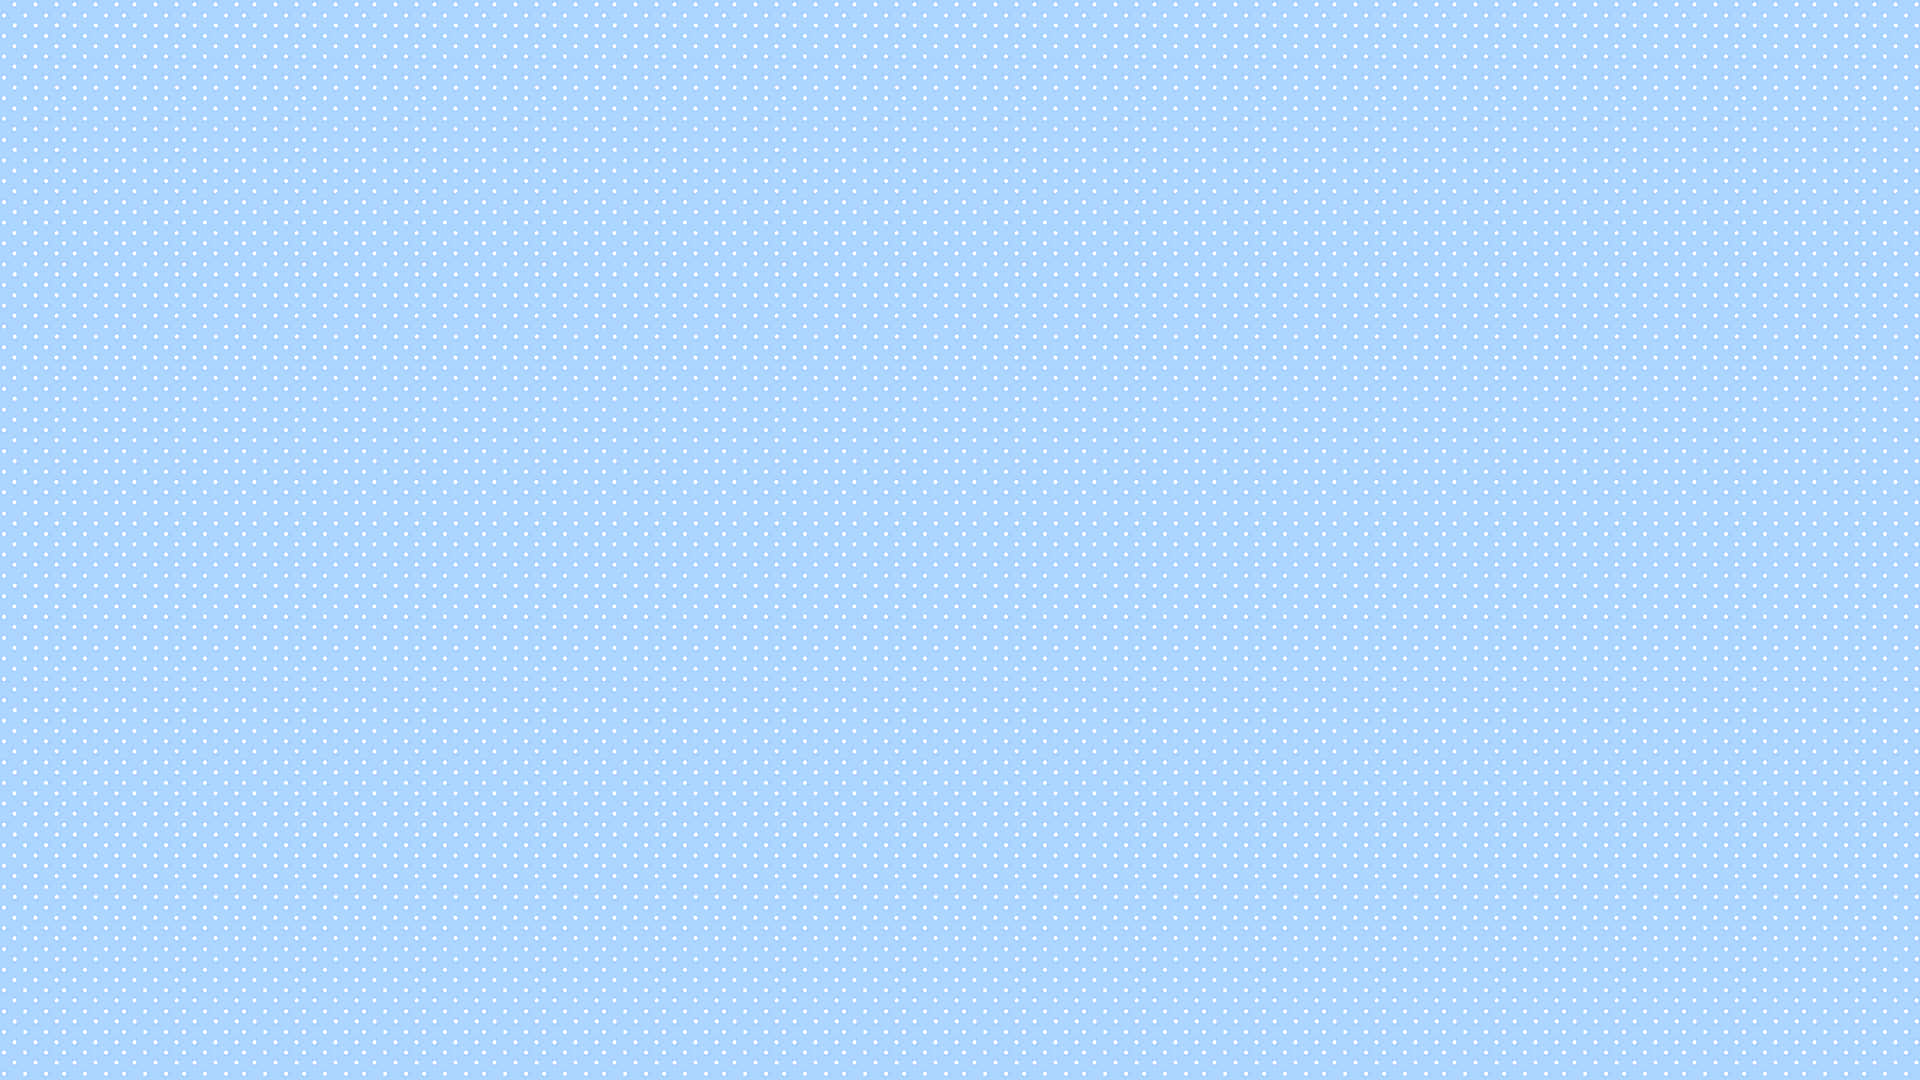 A Soft Blue Pastel Shimmer Background